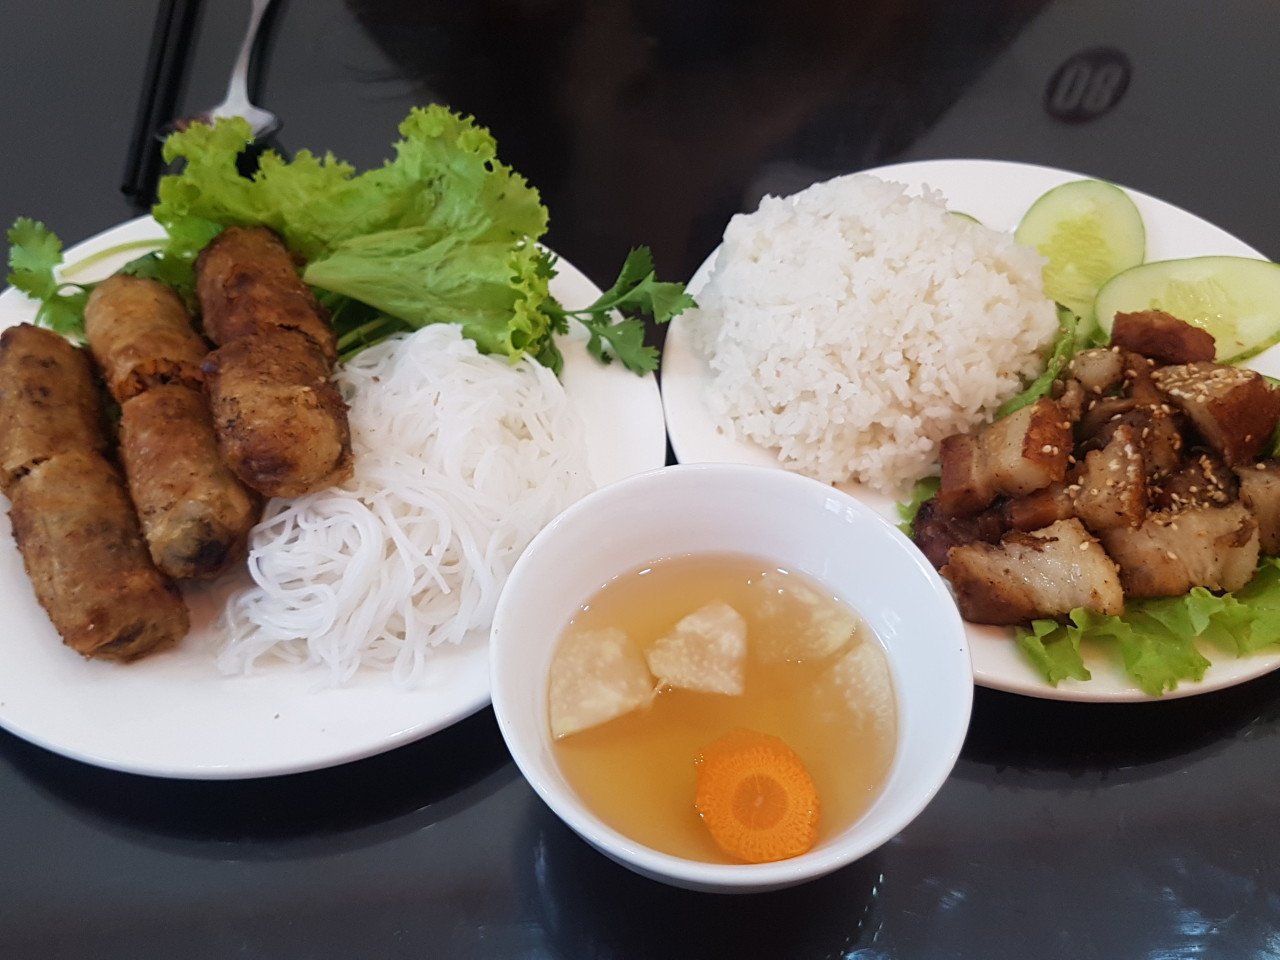 20180818_123155.jpg 베트남에서 먹었던 음식들